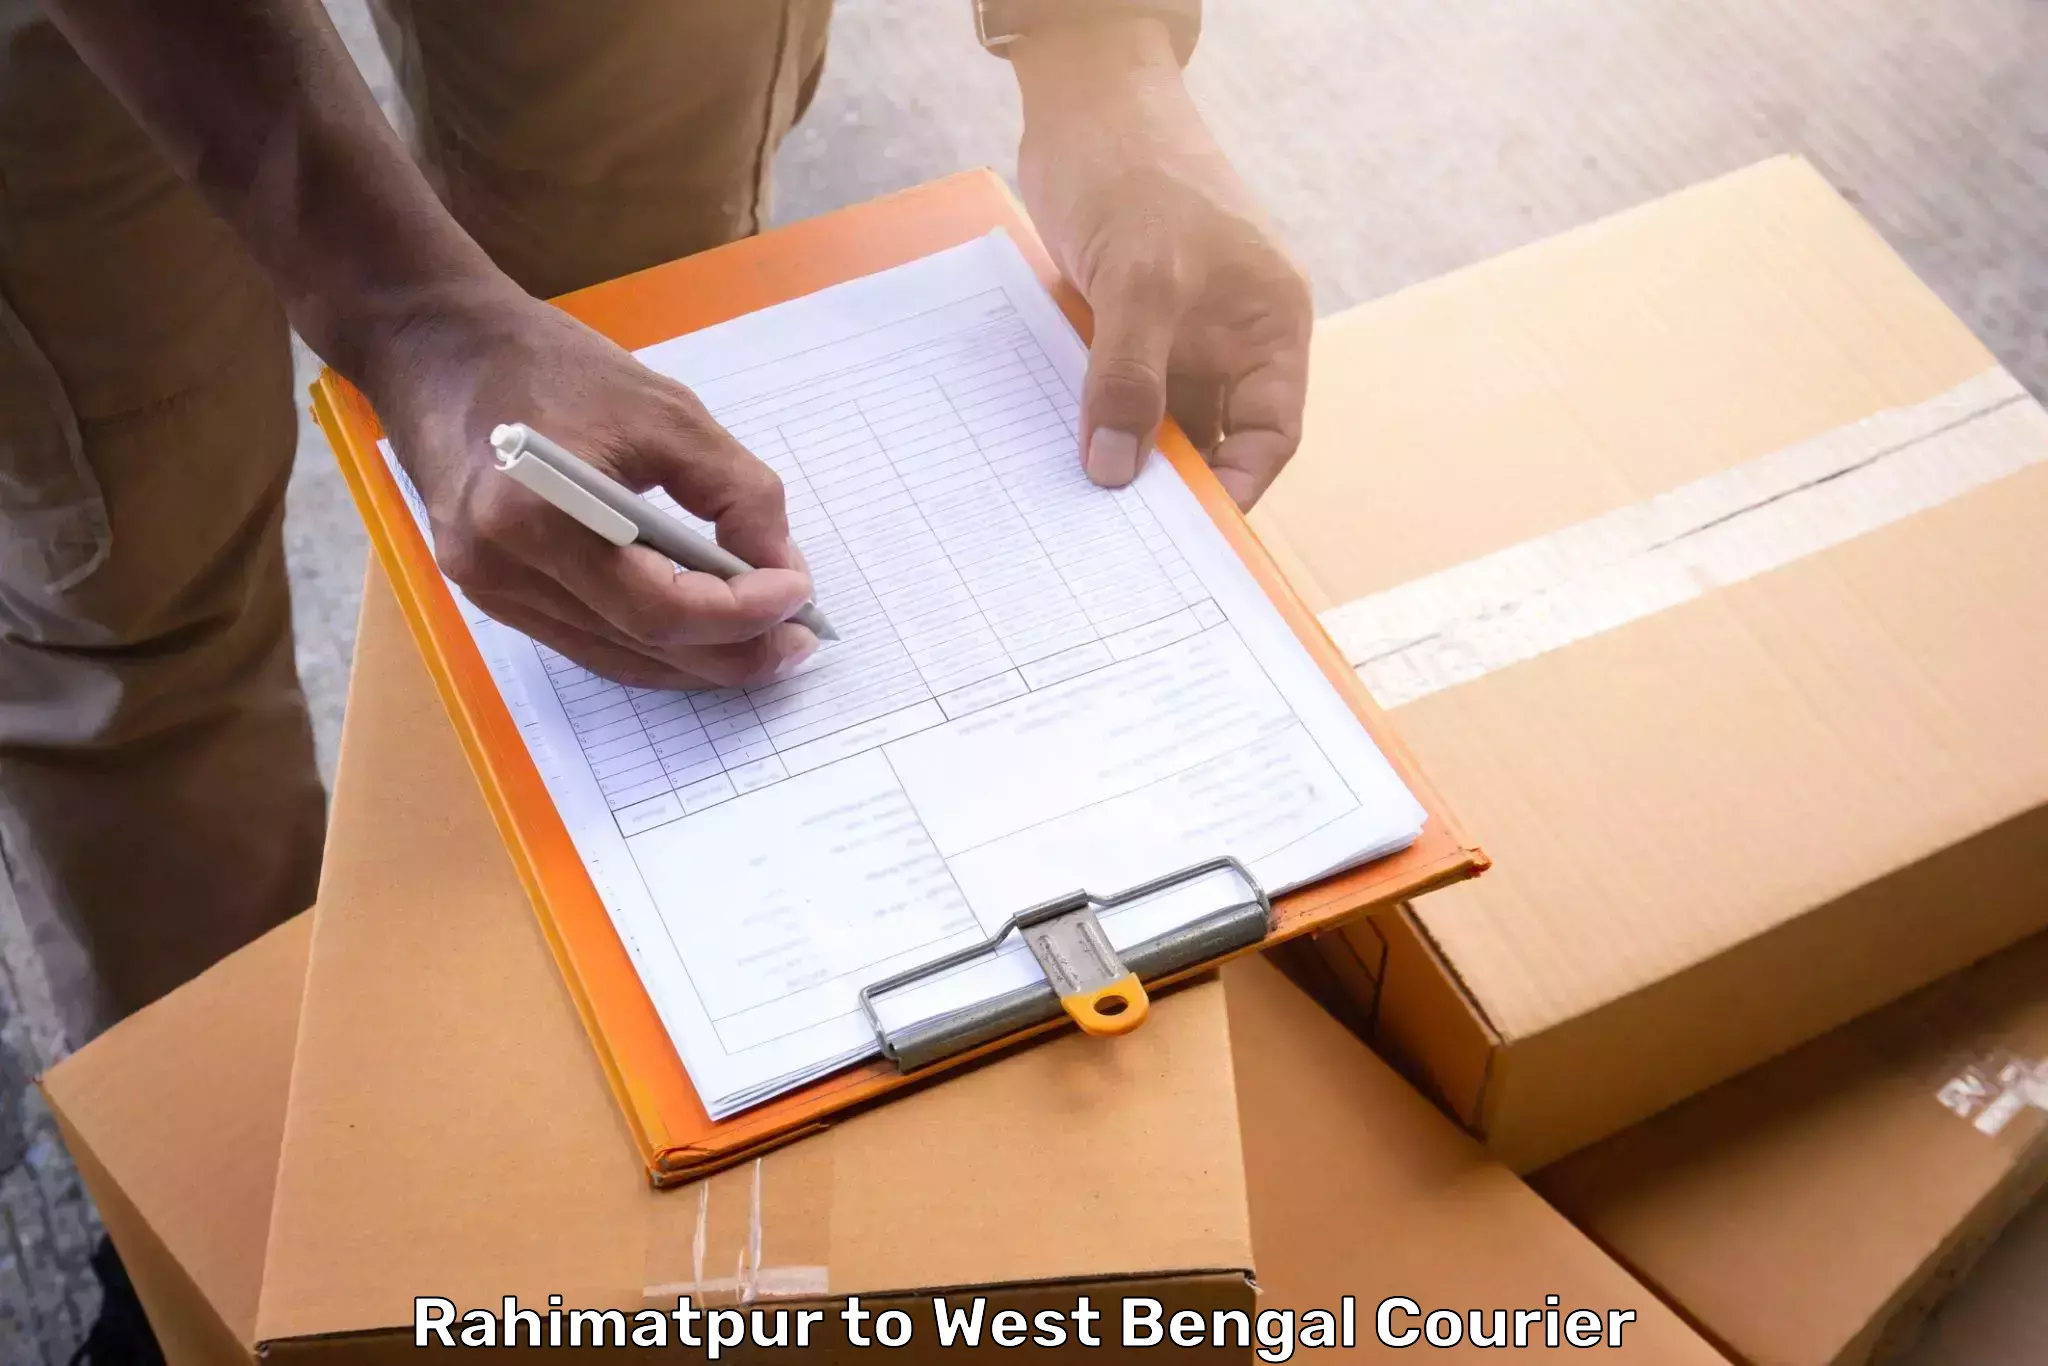 Baggage shipping service Rahimatpur to Mejia